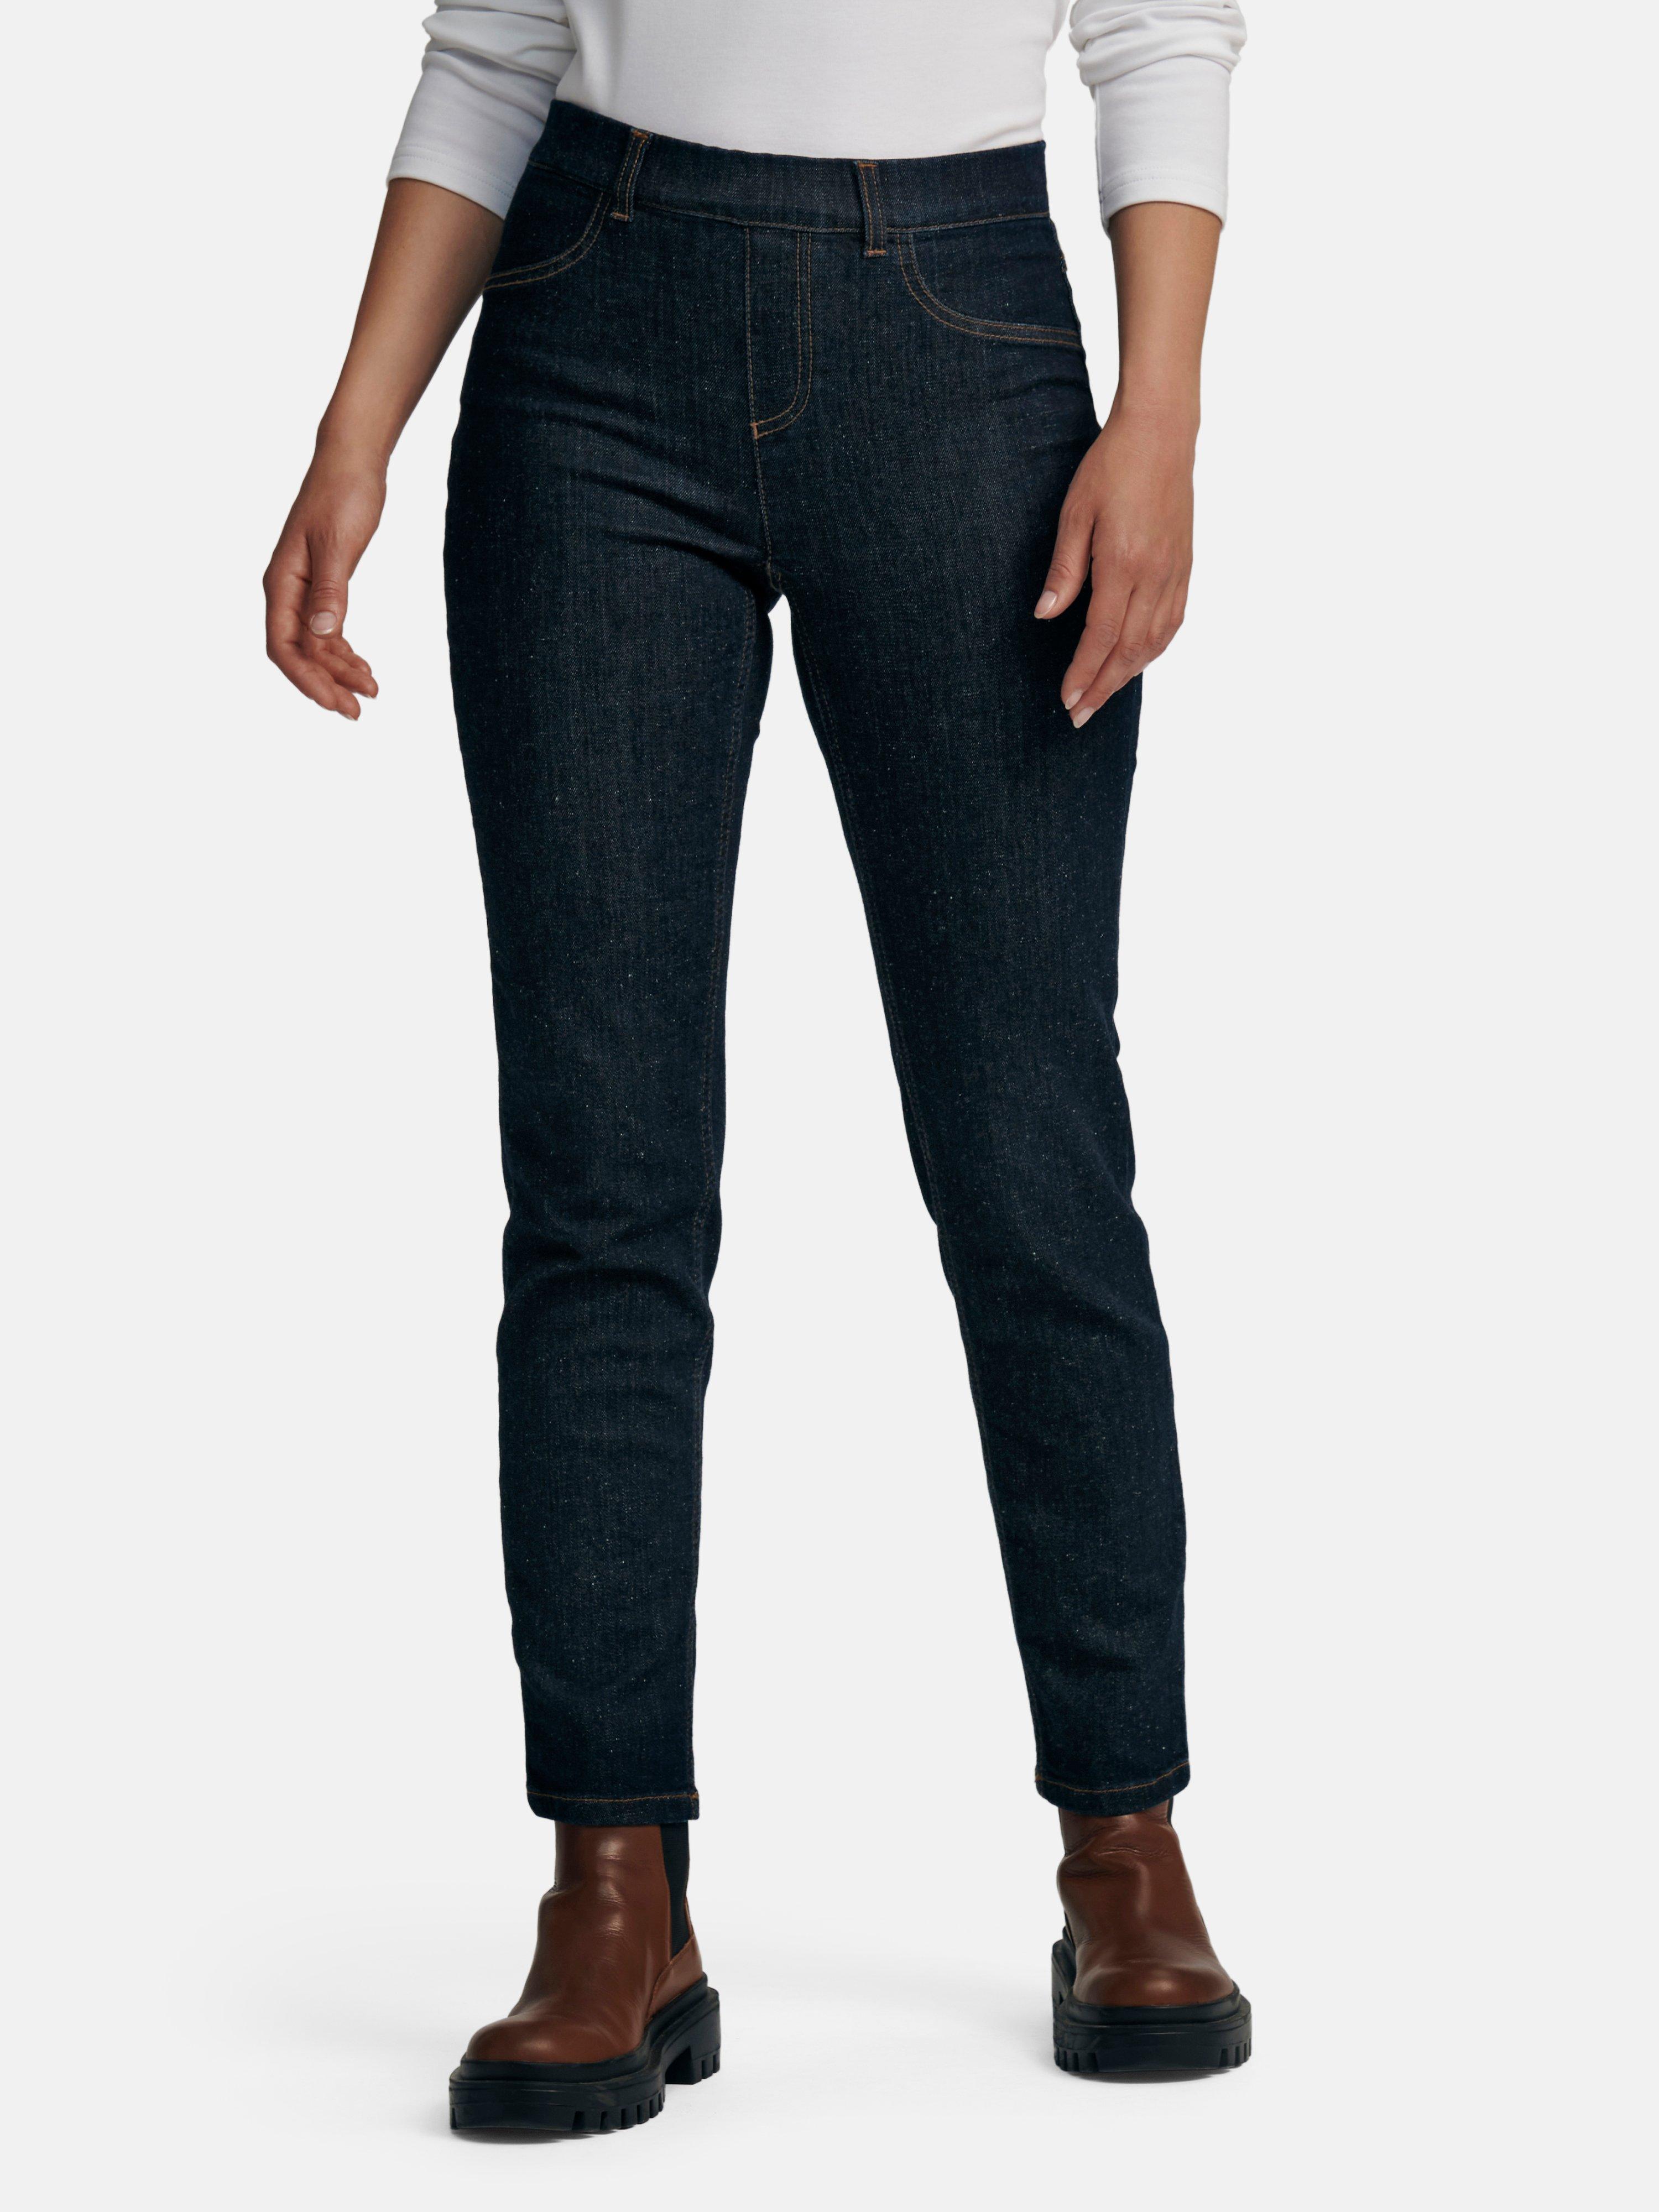 PETER HAHN PURE EDITION - Le jean taille élastiquée avec faux zip